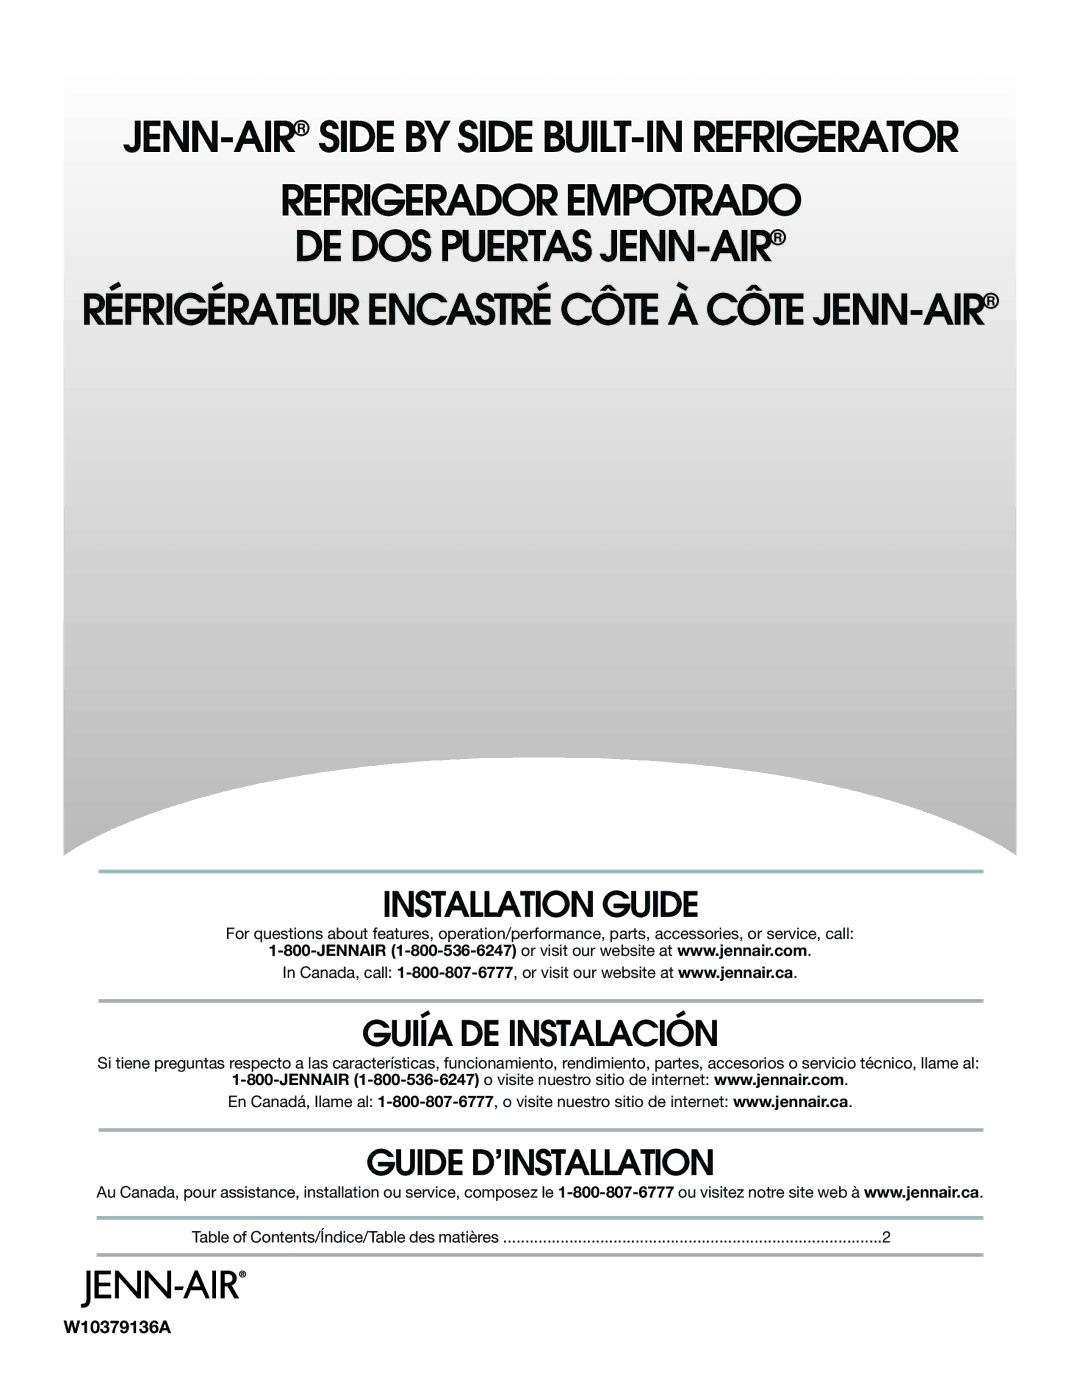 Jenn-Air W10379136A manual Installation Guide, Guiía DE Instalación, Guide D’INSTALLATION 